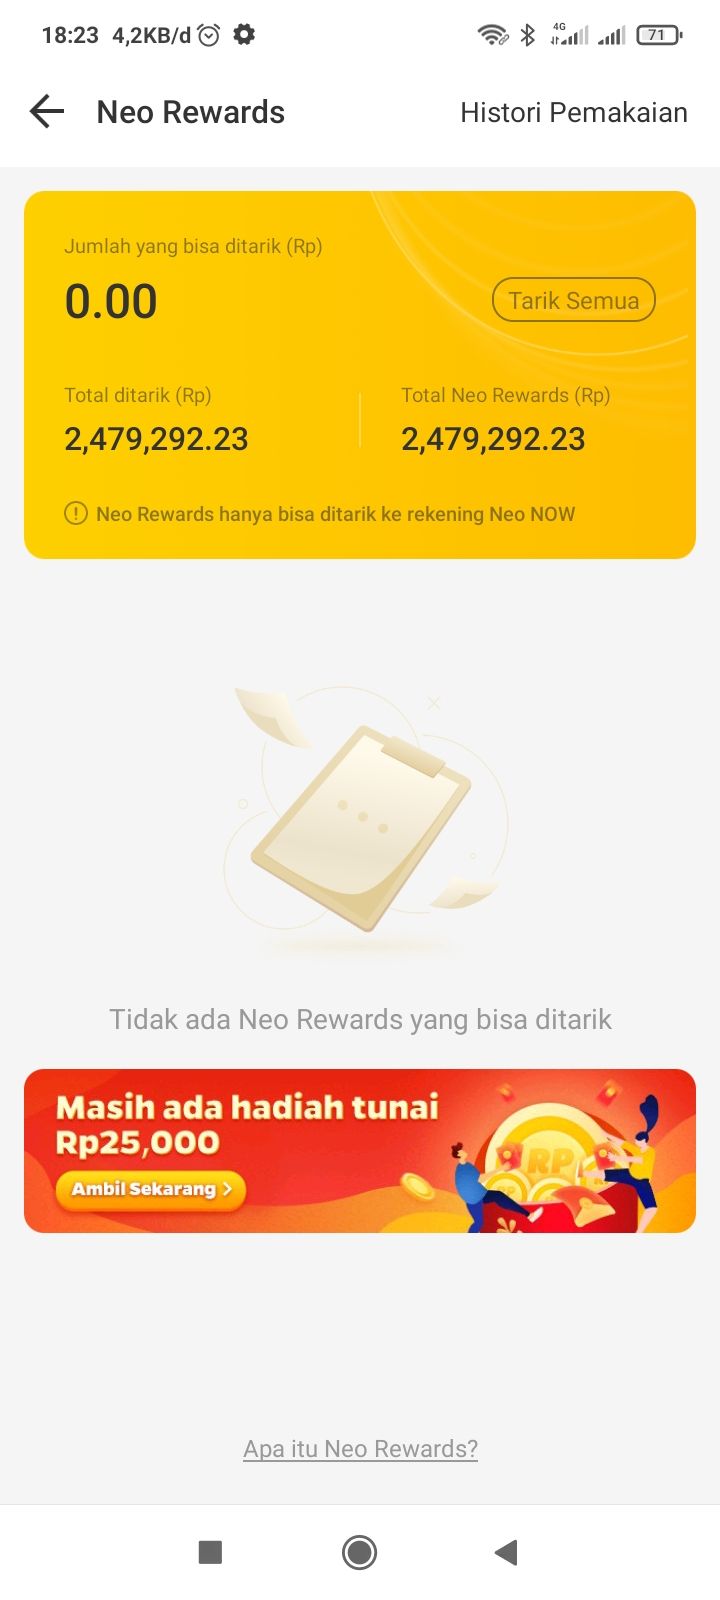 Link download APK Neo+ Plus penghasil uang terbukti begini pengalaman saya dari aplikasi hasilin duit Rp2 juta lebih